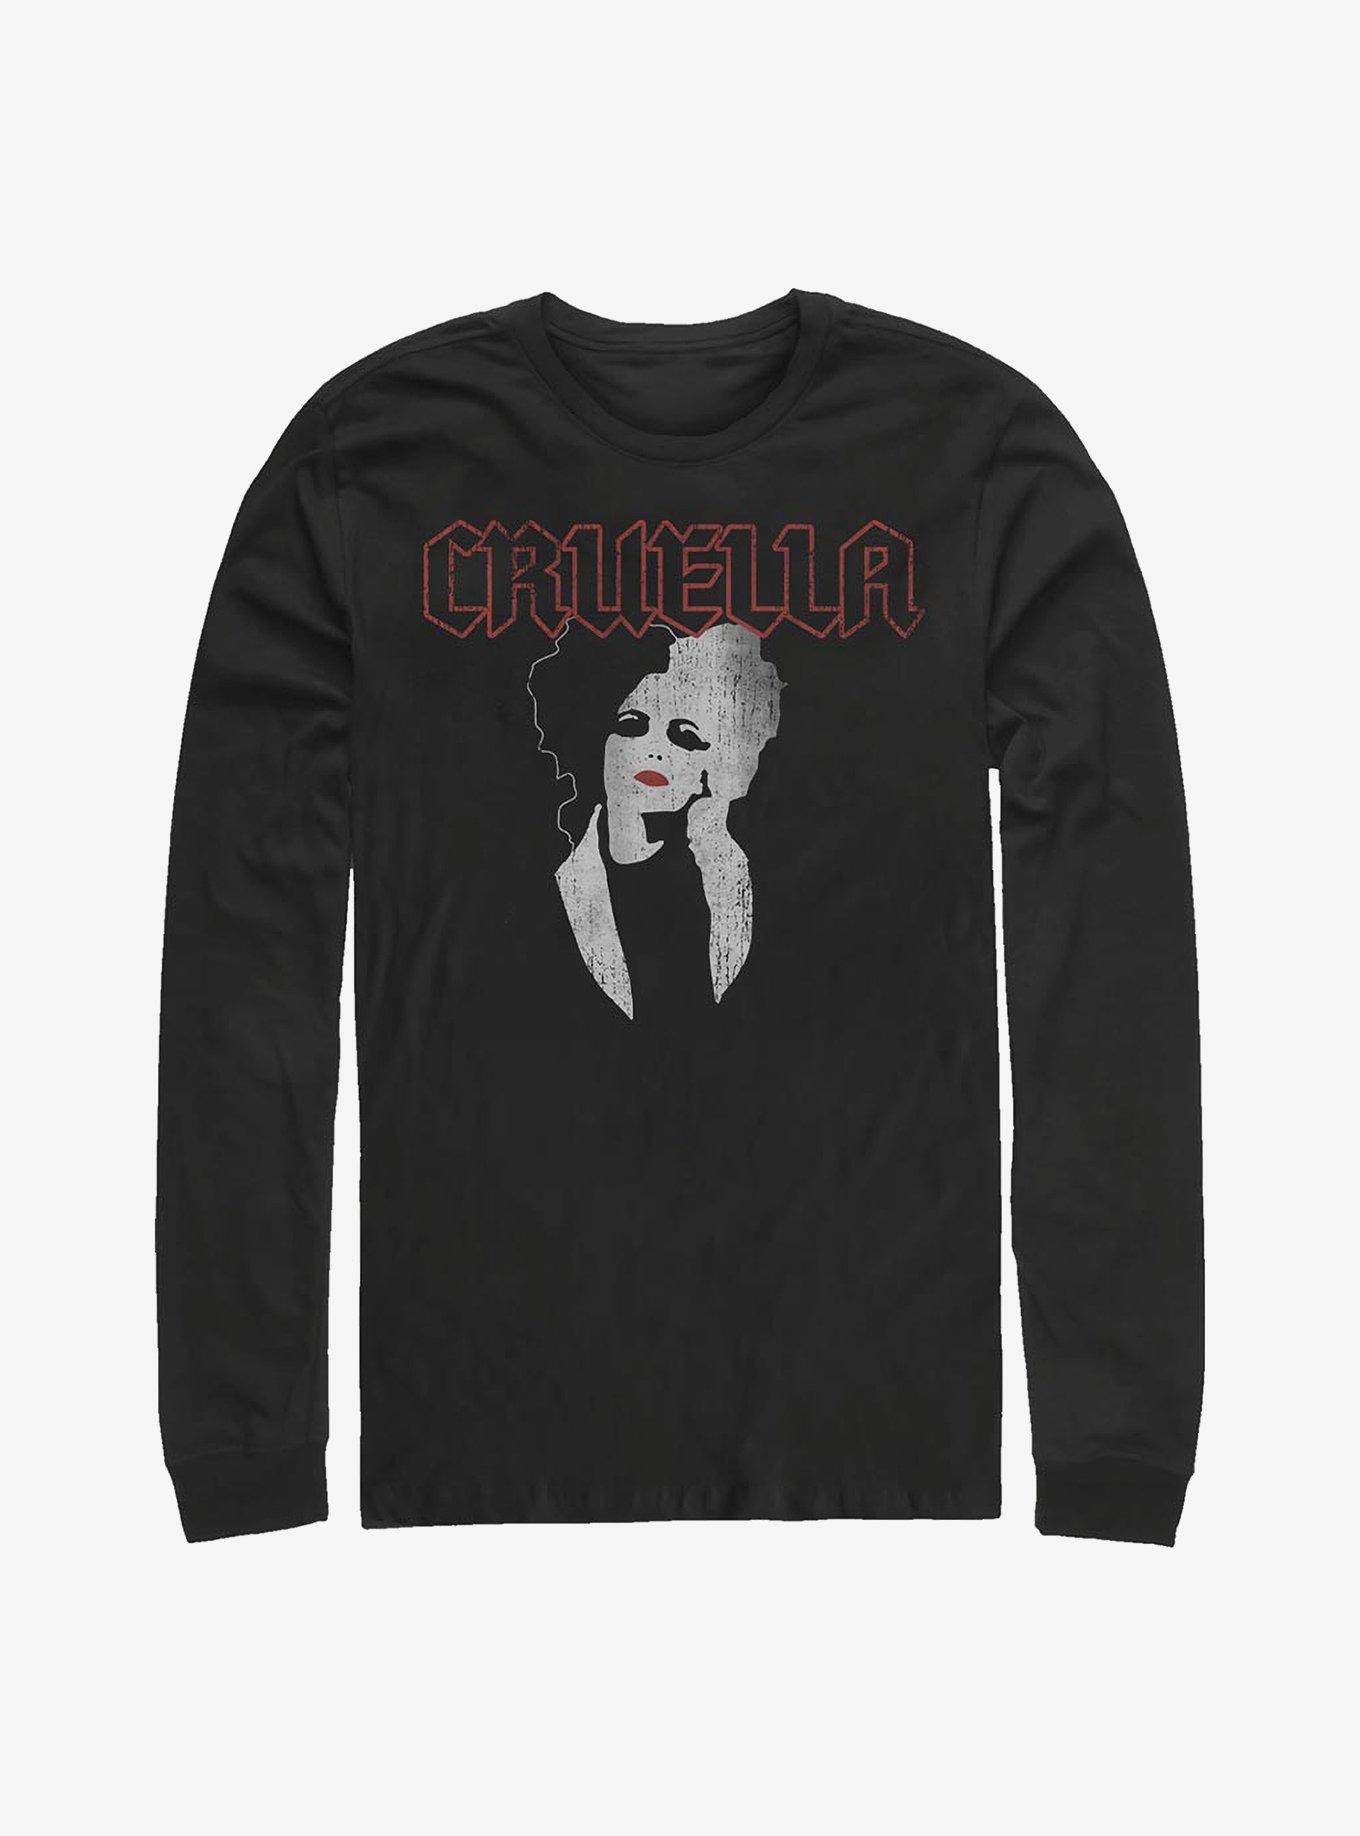 Disney Cruella Rock Long-Sleeve T-Shirt, BLACK, hi-res